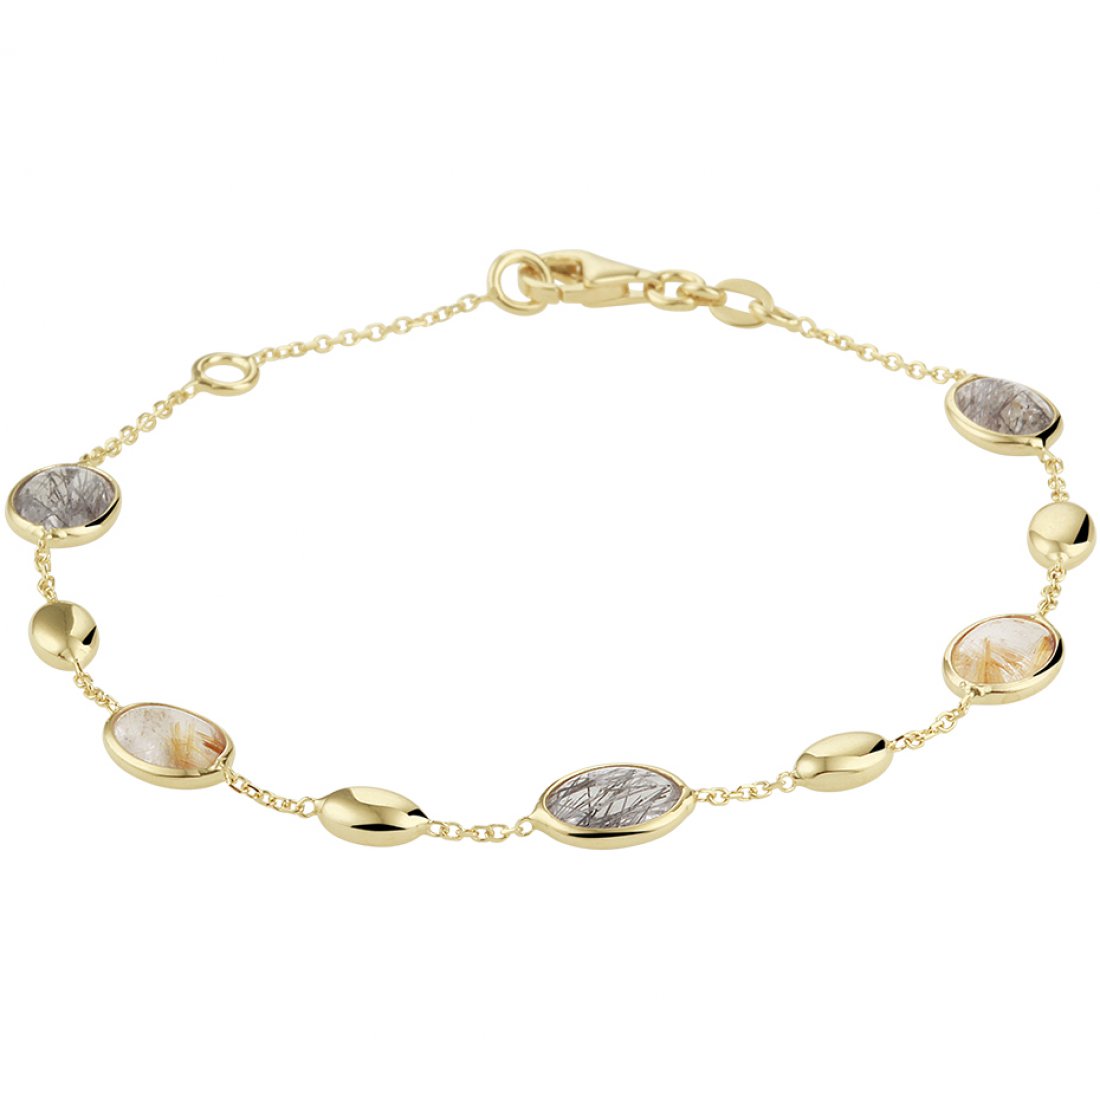 14 Karaat Gouden Armband / Anny Buul Juweliers Sieraden